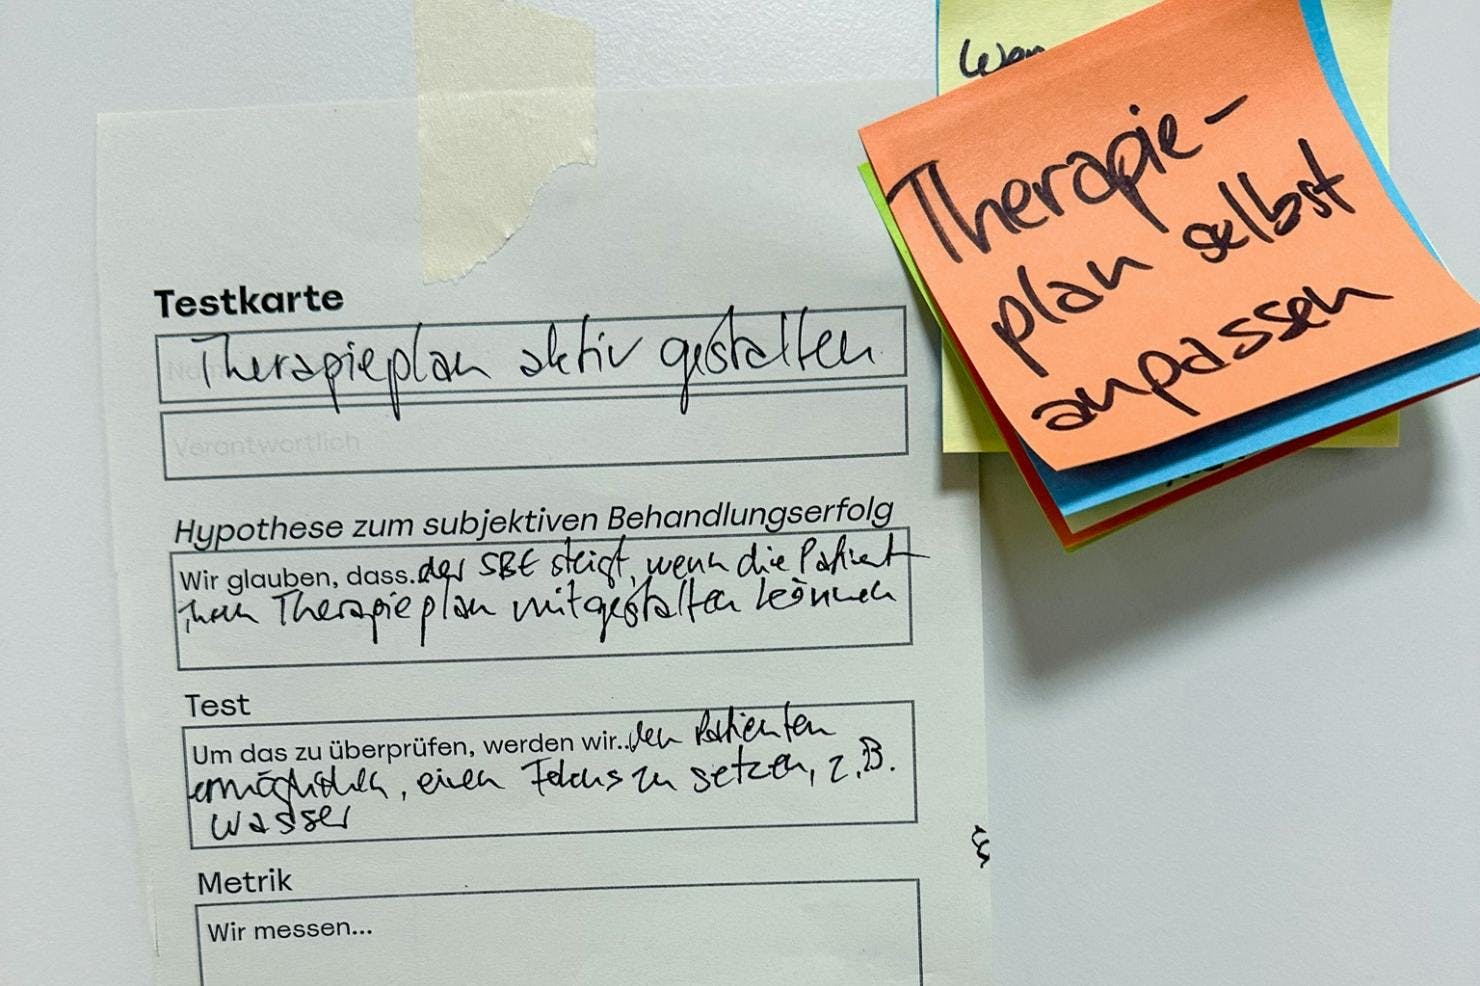 Patientenerlebnis im Fokus: Testkarte aus dem Ideation-Workshop im Gesundheitswesen